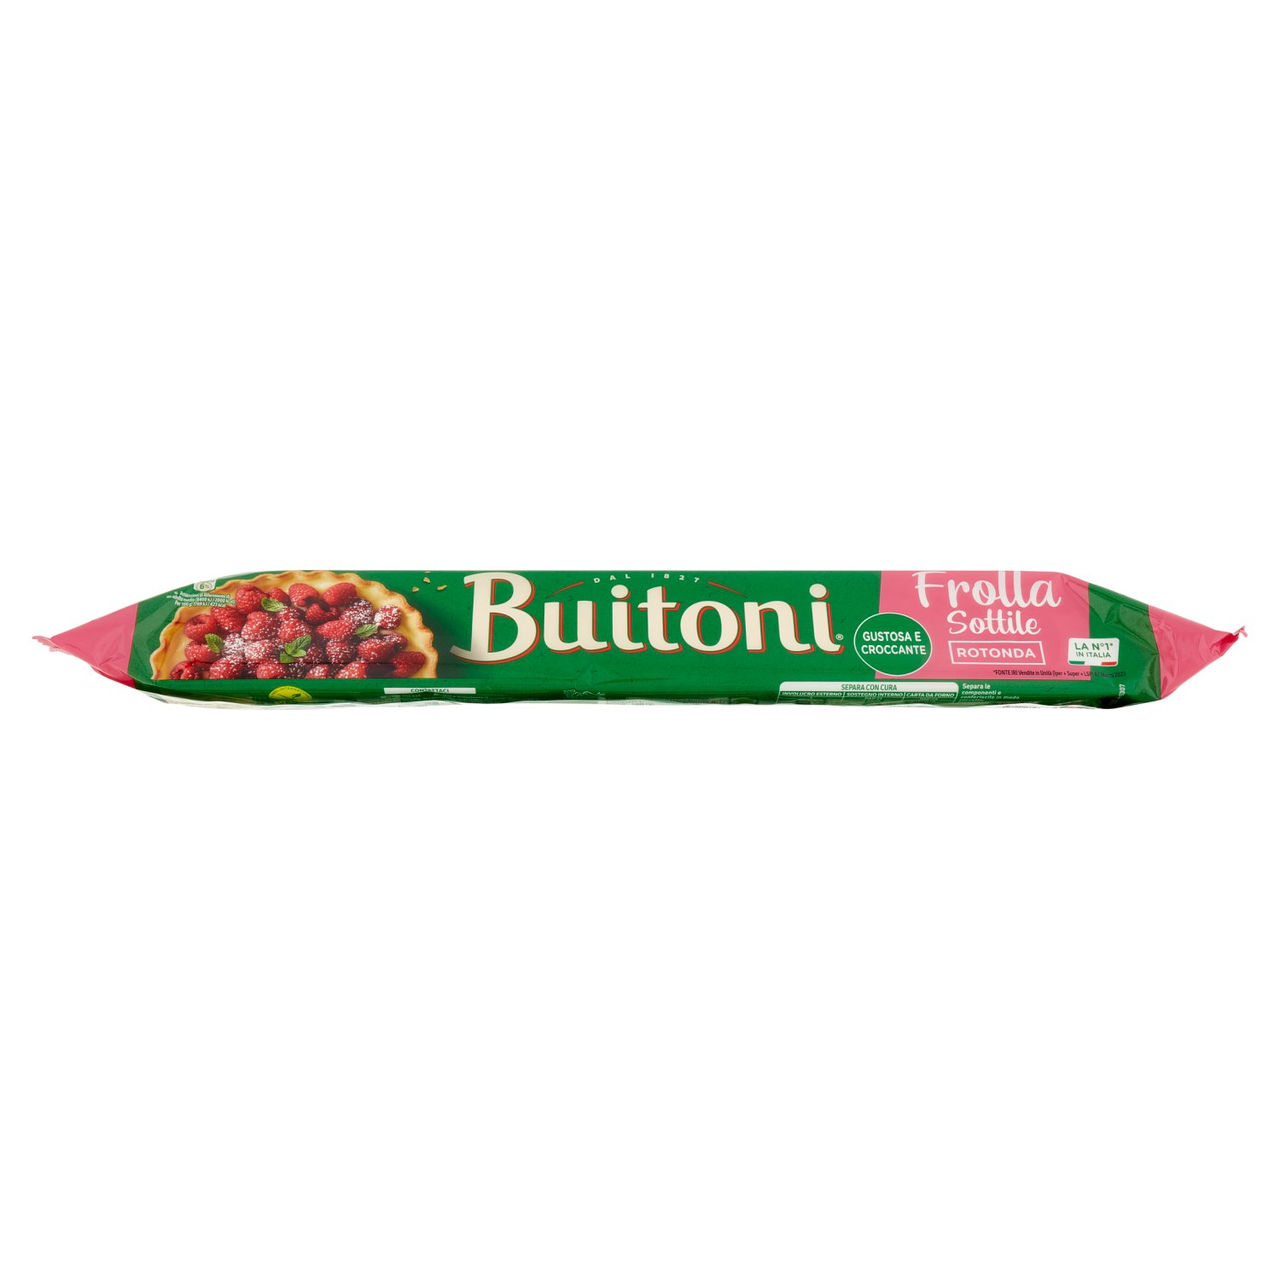 Pasta frolla tonda in rotolo Buitoni online